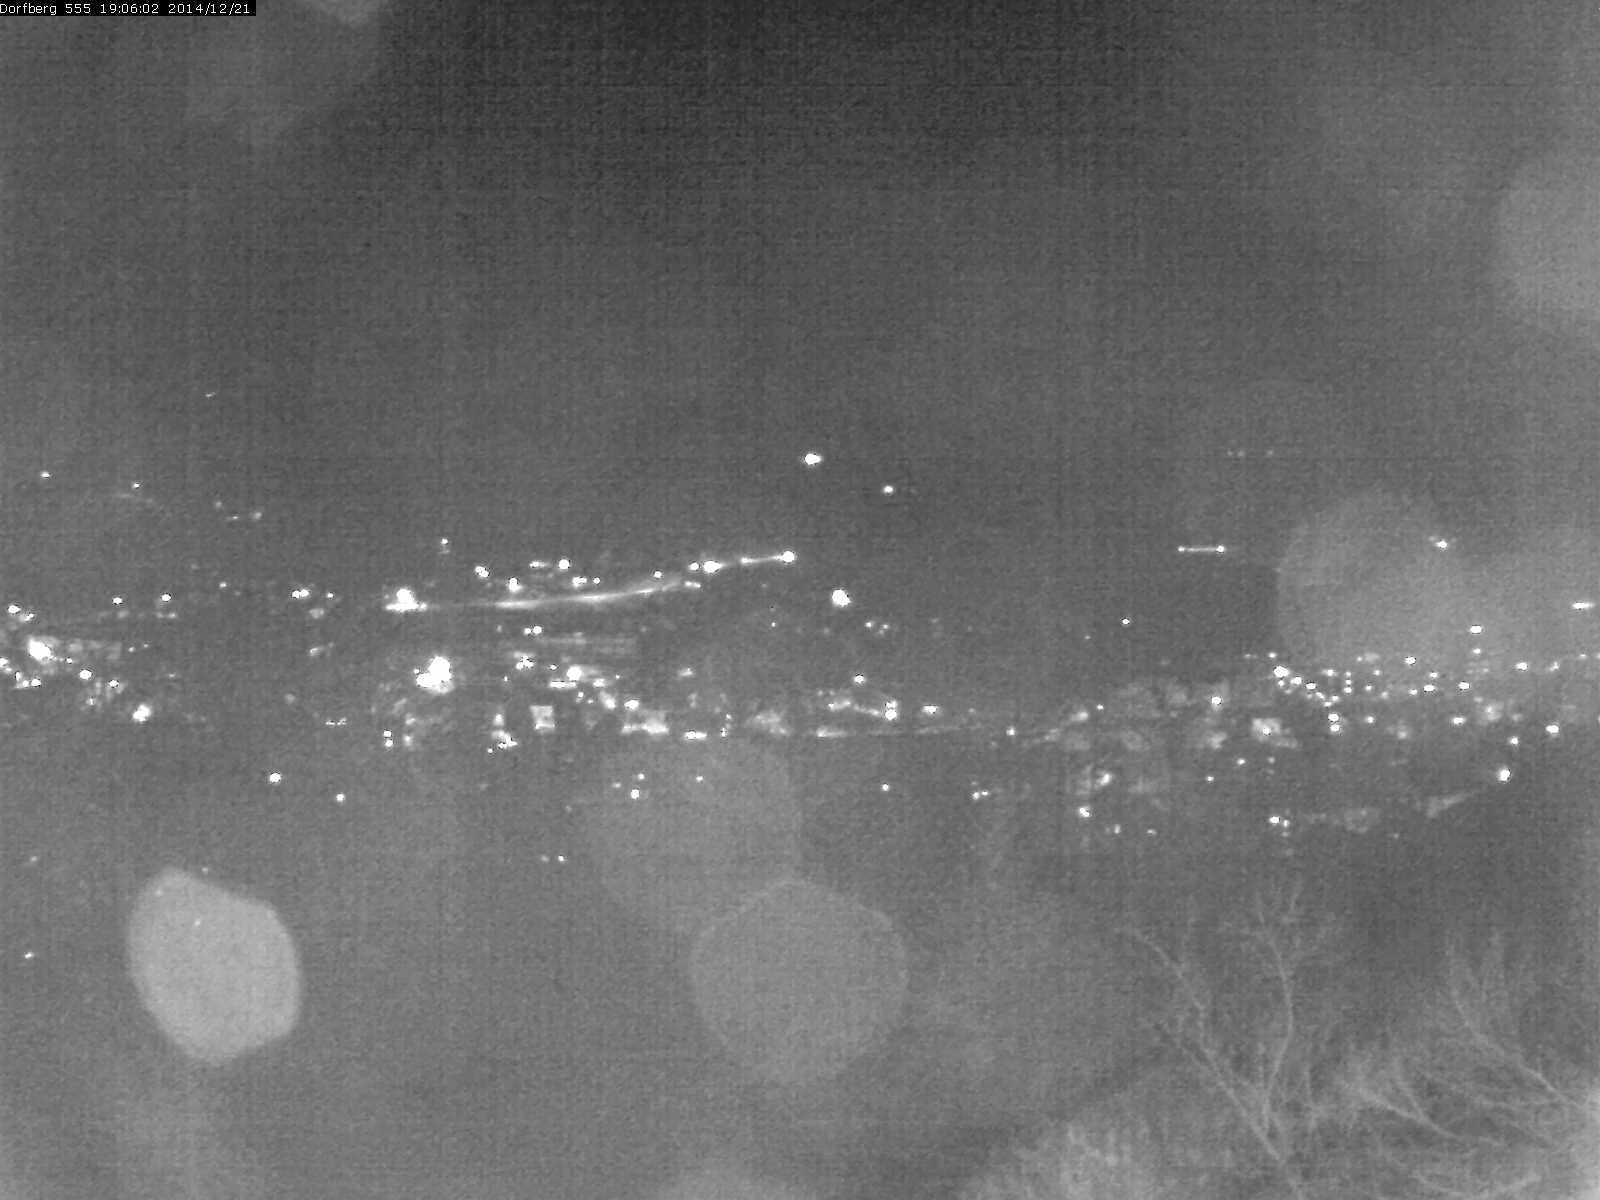 Webcam-Bild: Aussicht vom Dorfberg in Langnau 20141221-190601